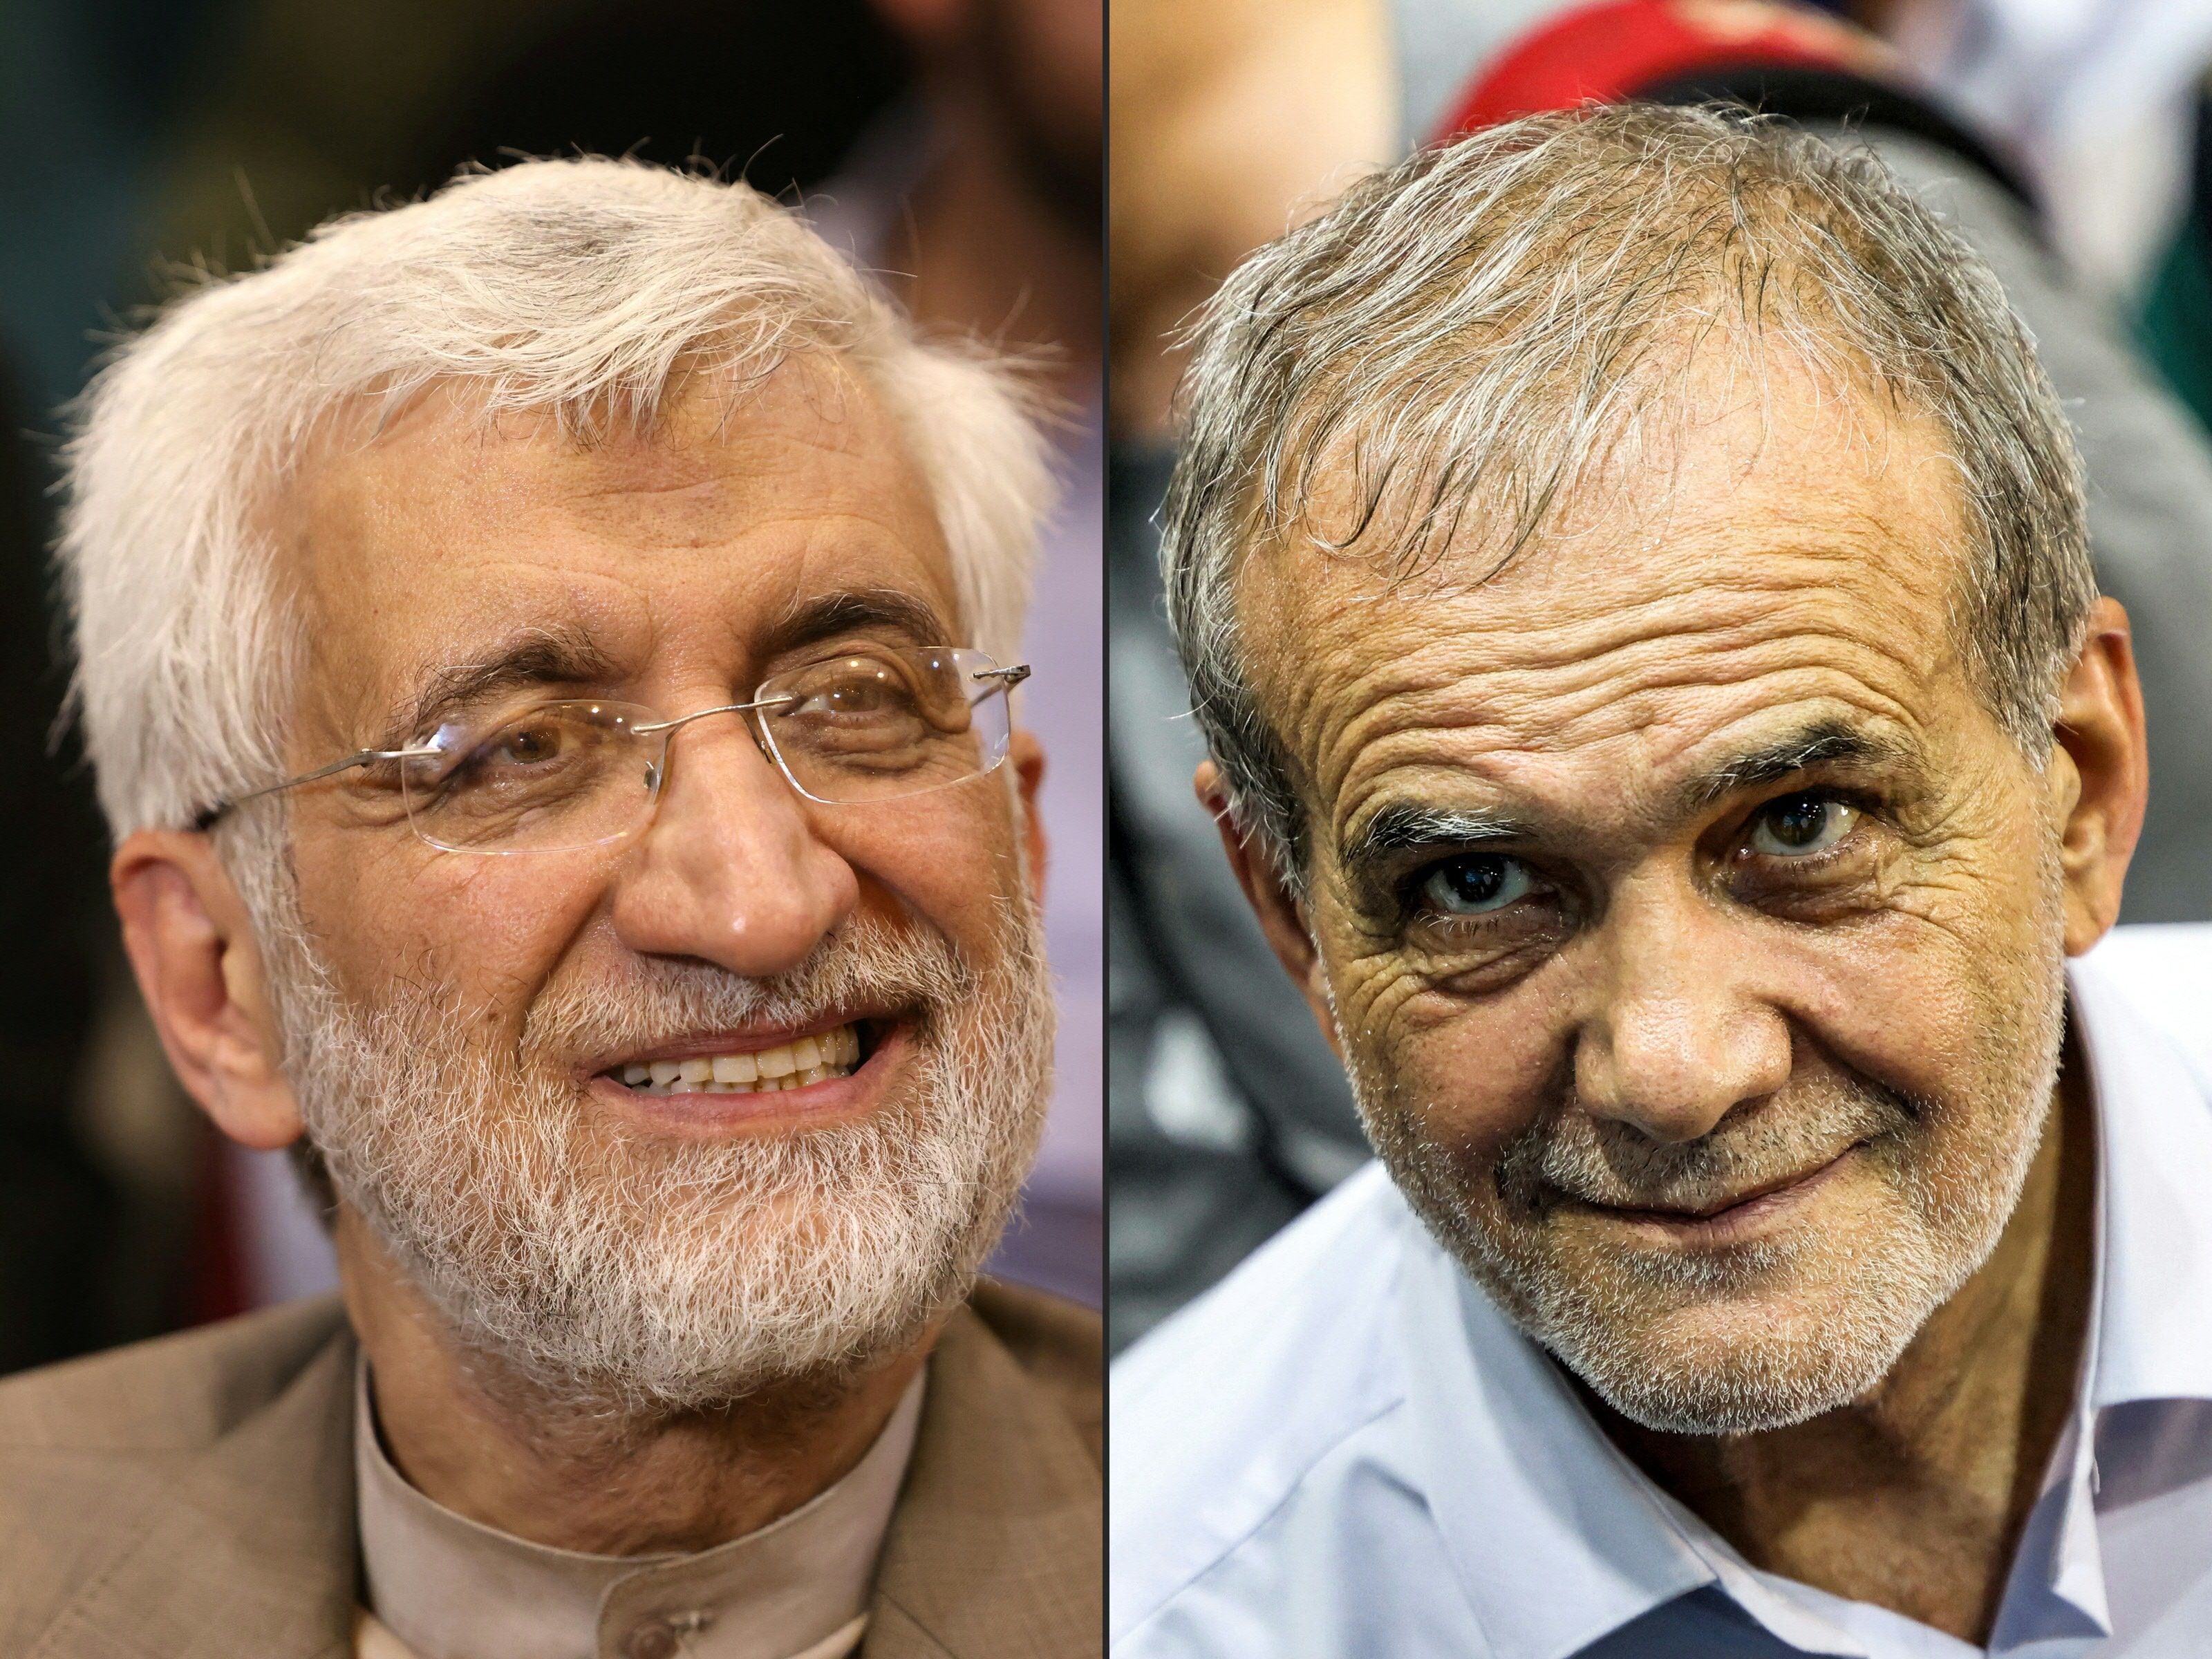 Candidato ultraconservador y reformista disputarán balotaje en elecciones presidenciales iraníes